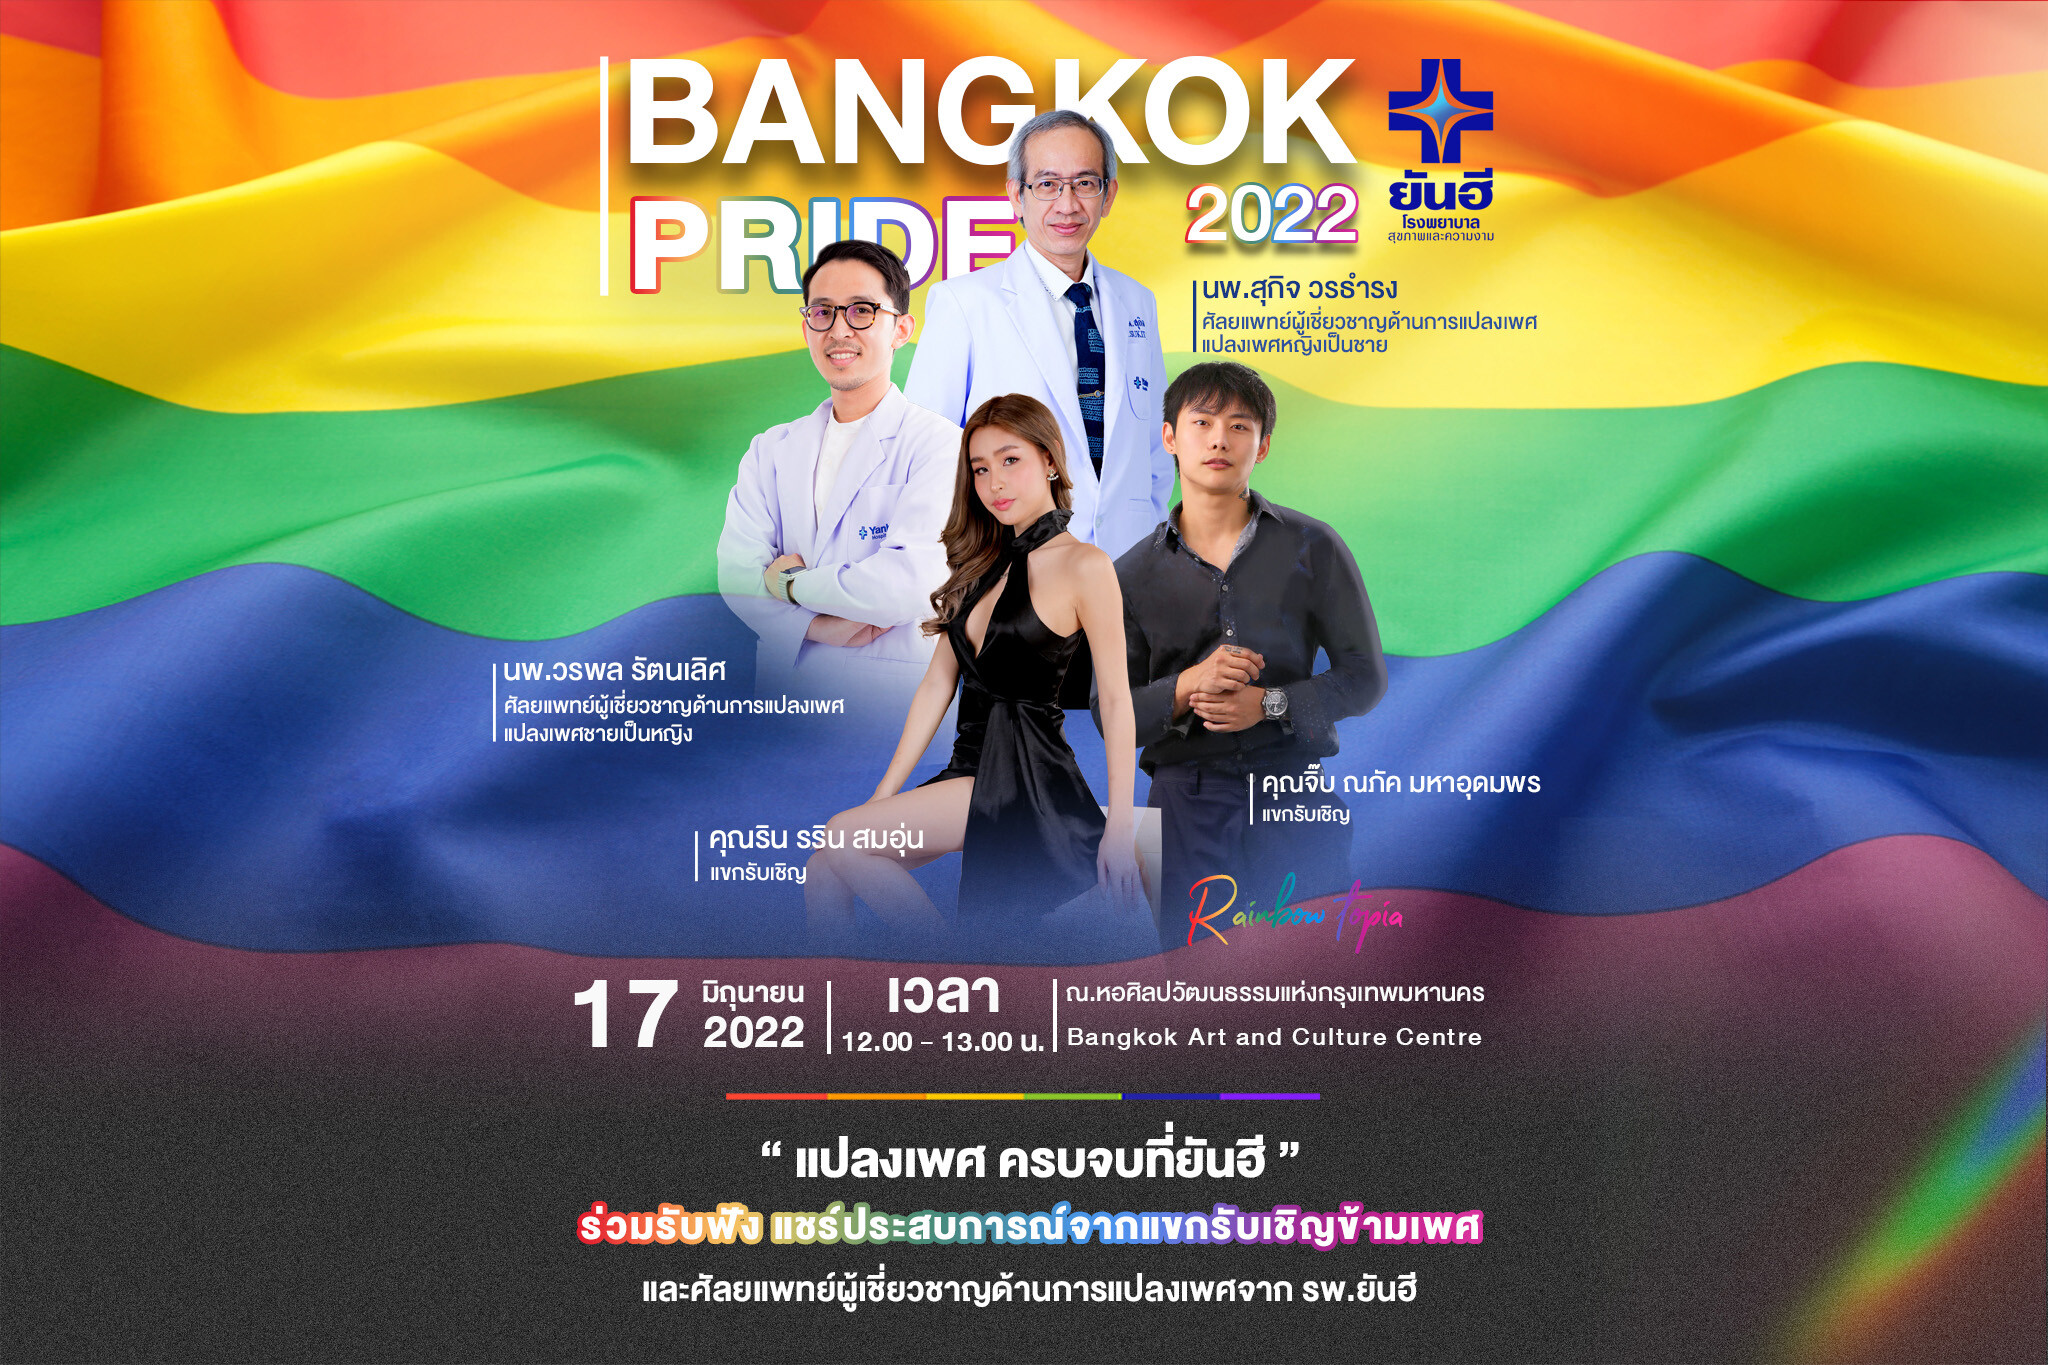 "รพ.ยันฮี" ชวนเจาะ "เปิดเบื้องหลังผ่าตัดข้ามเพศ กับชีวิตใหม่ที่เลือกได้" งานสัมมนาในงาน "PRIDE BANGKOK 2022"